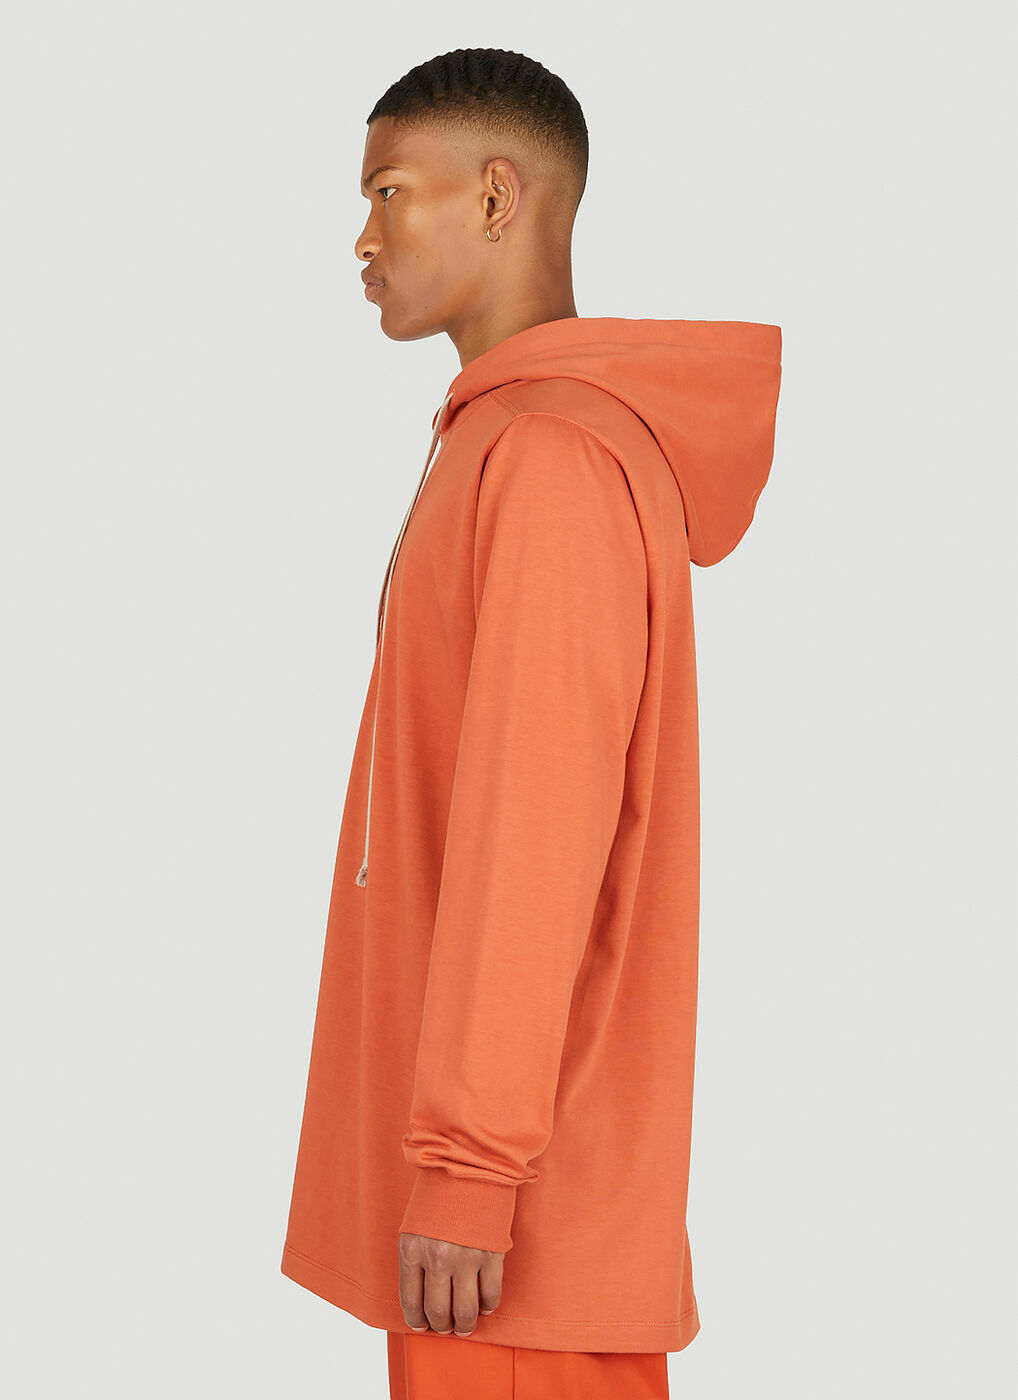 Longline Hooded Sweatshirt in Orange